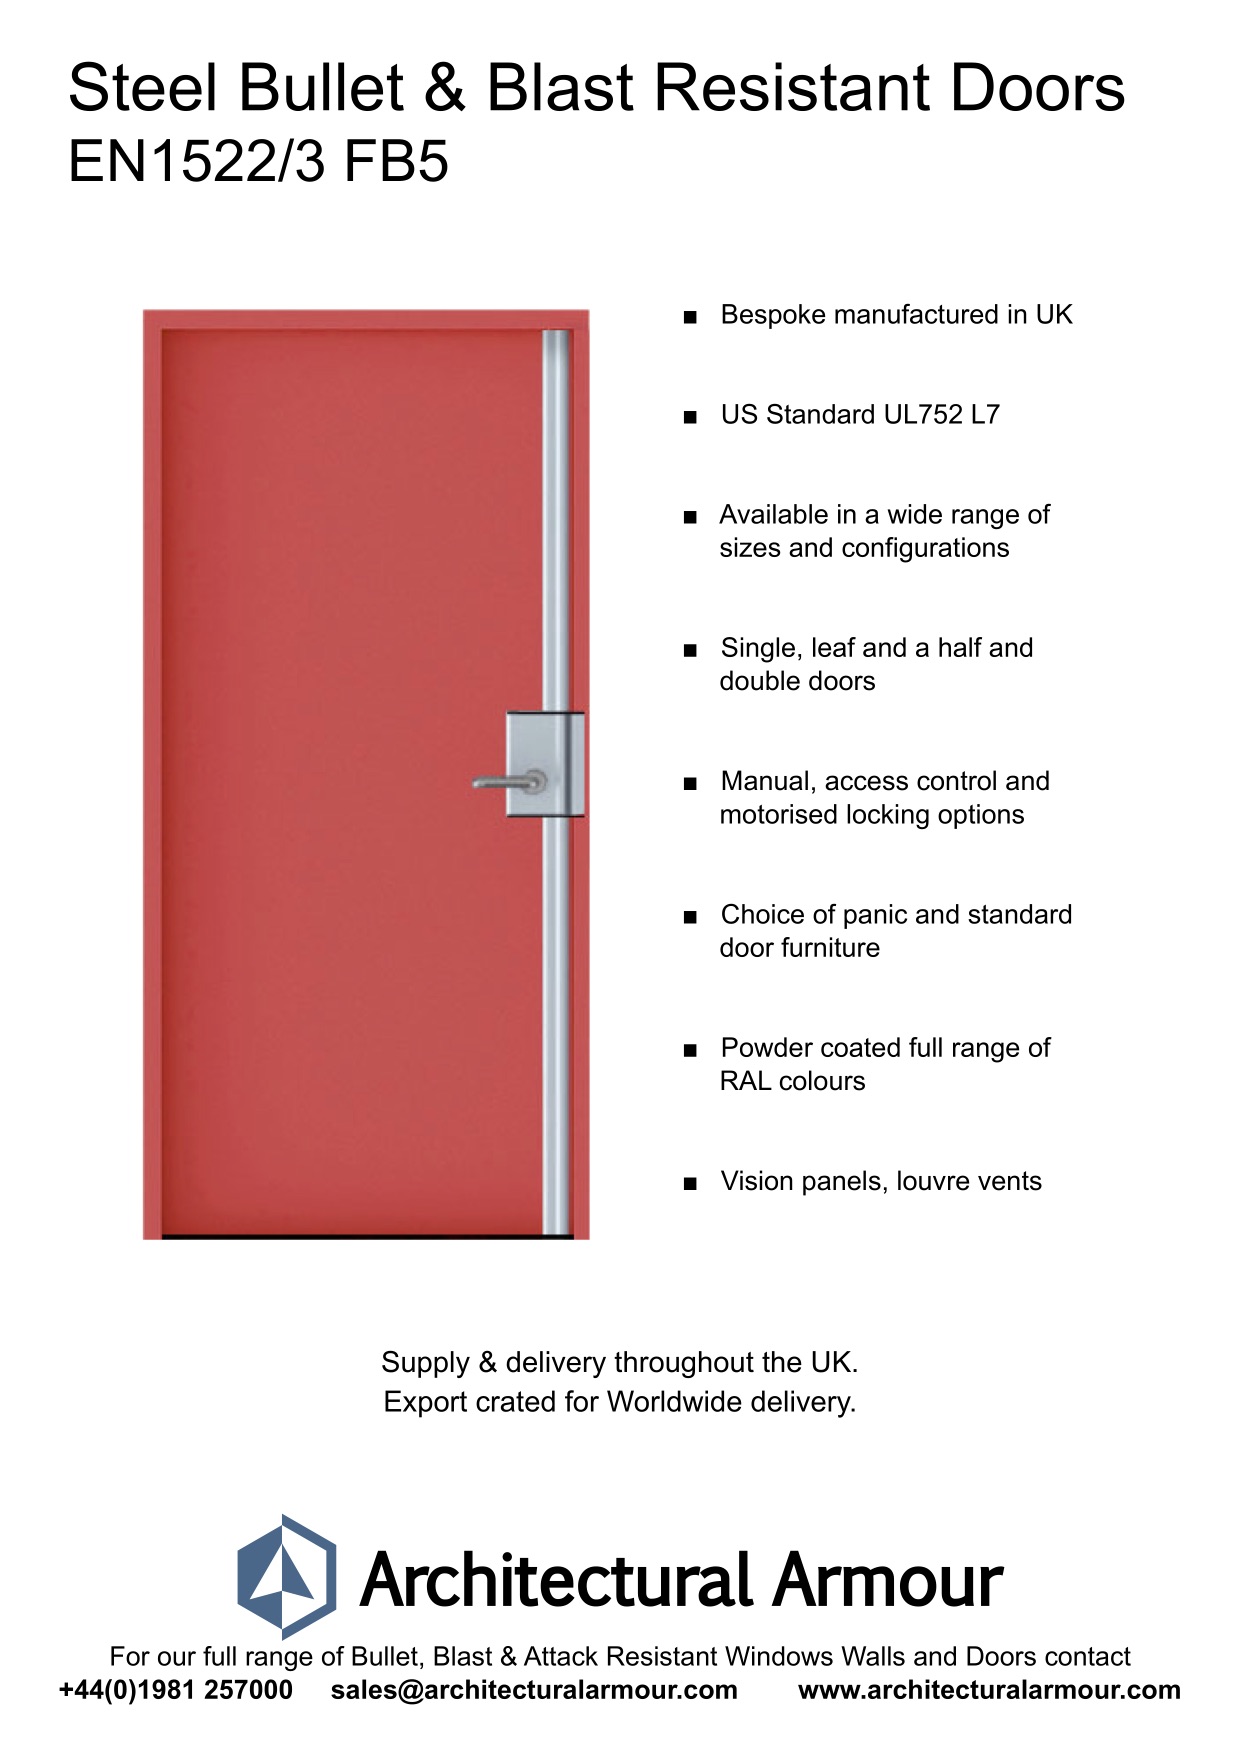 Blast-and-Bullet-Resistant-Steel-Door-UK-EN1522-3-FB5